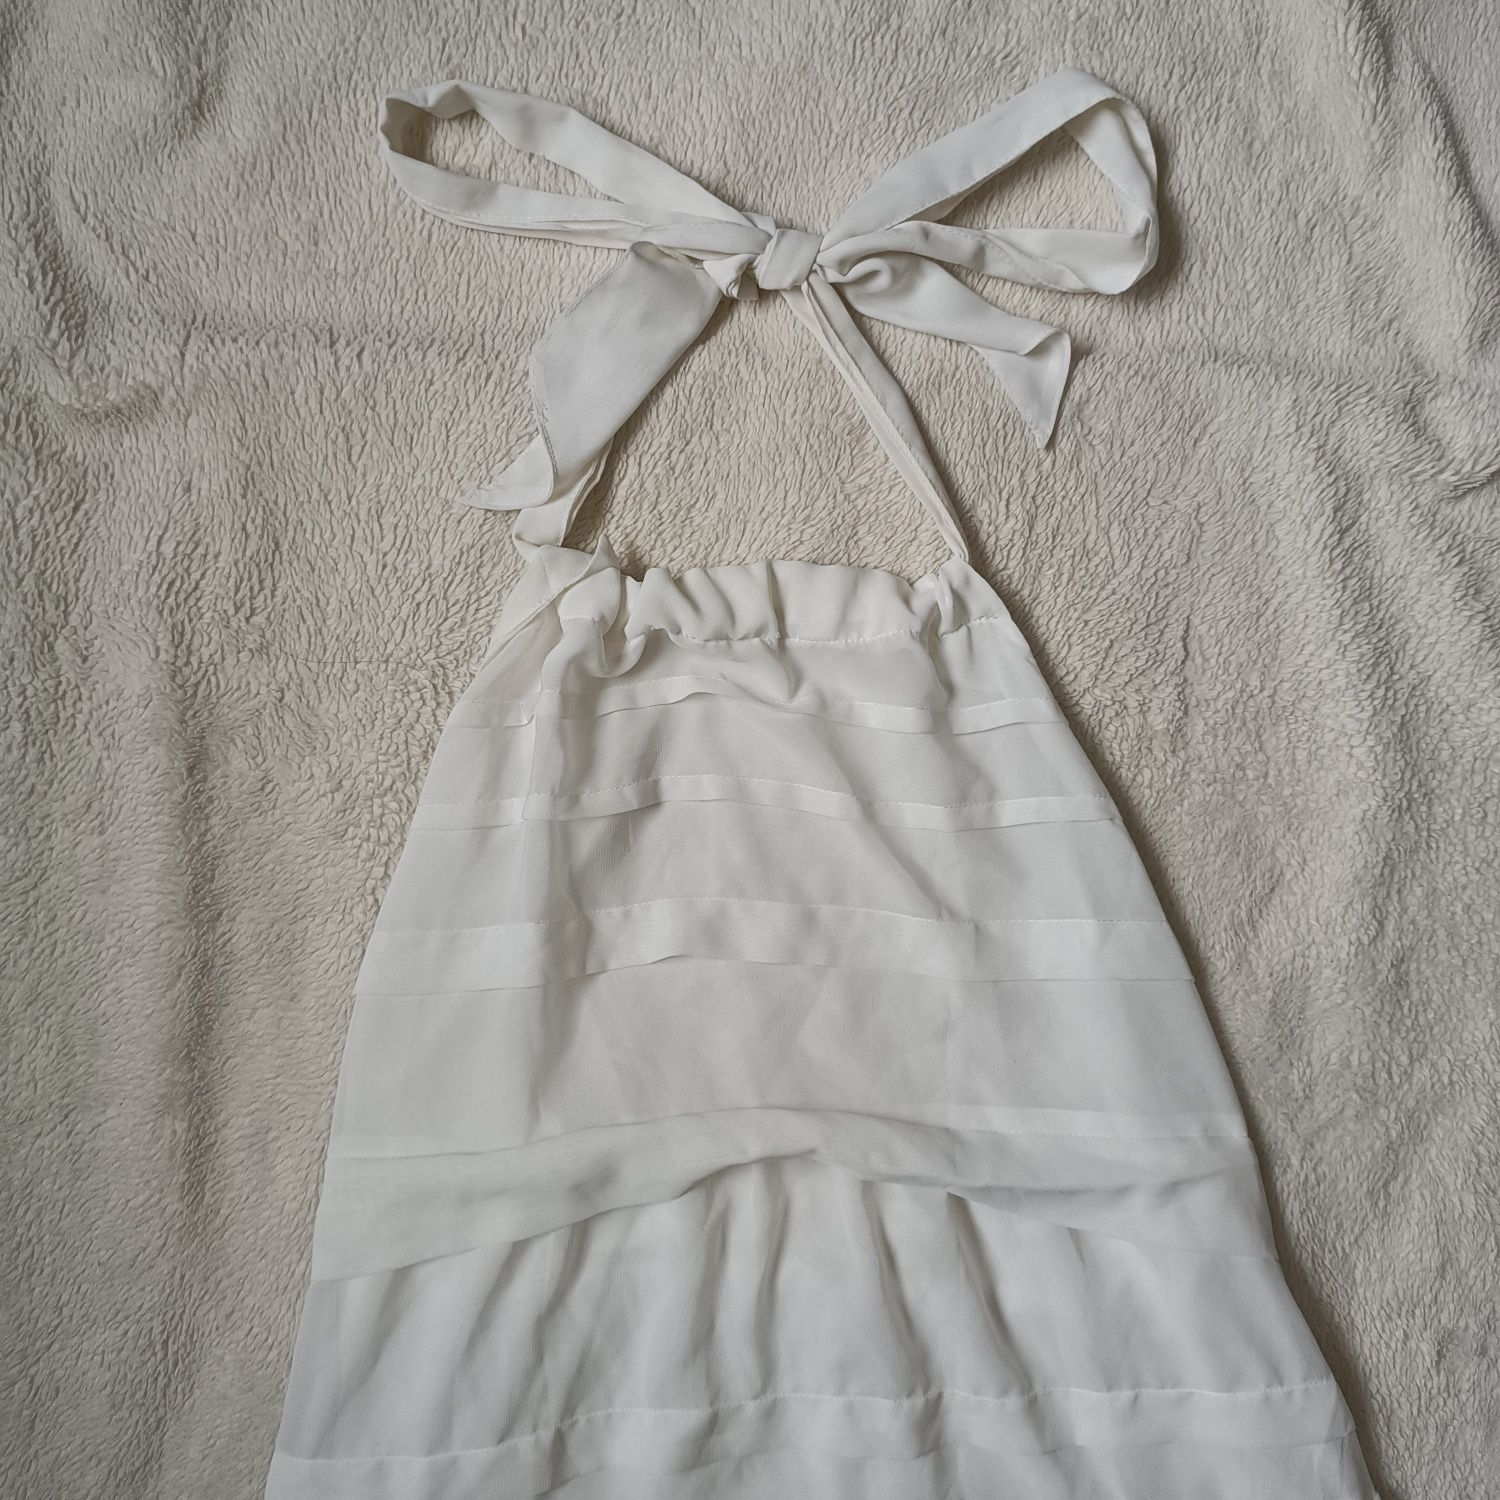 true vintage white dress